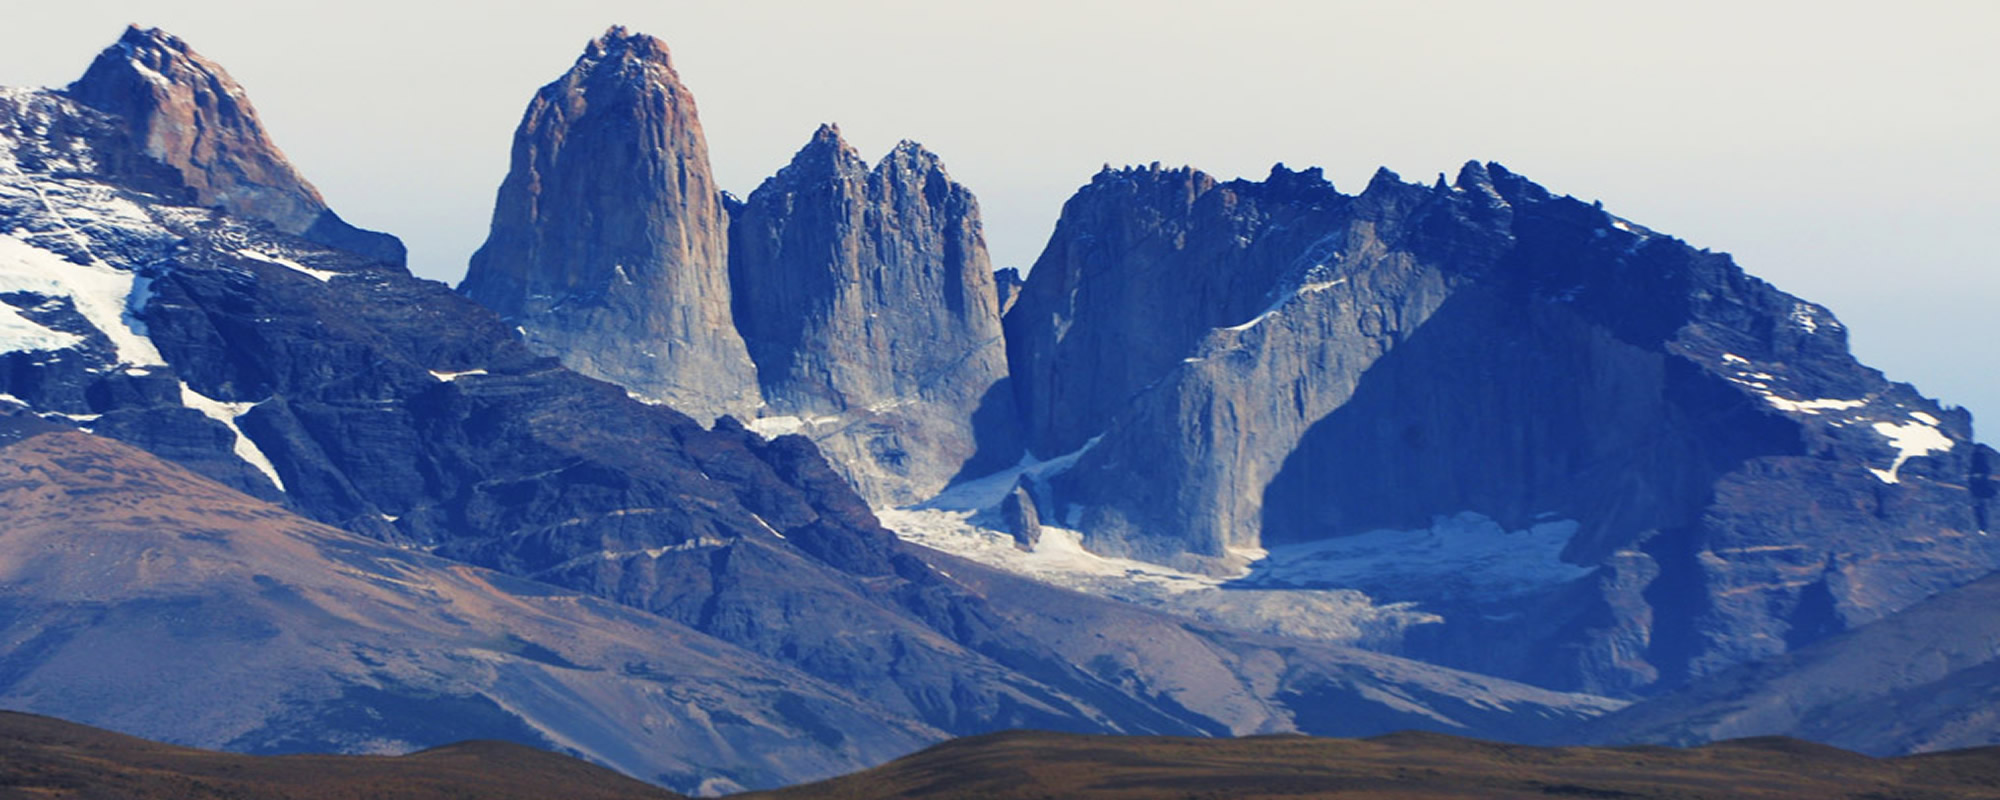 Ruta Kaweskar, Torres del Paine